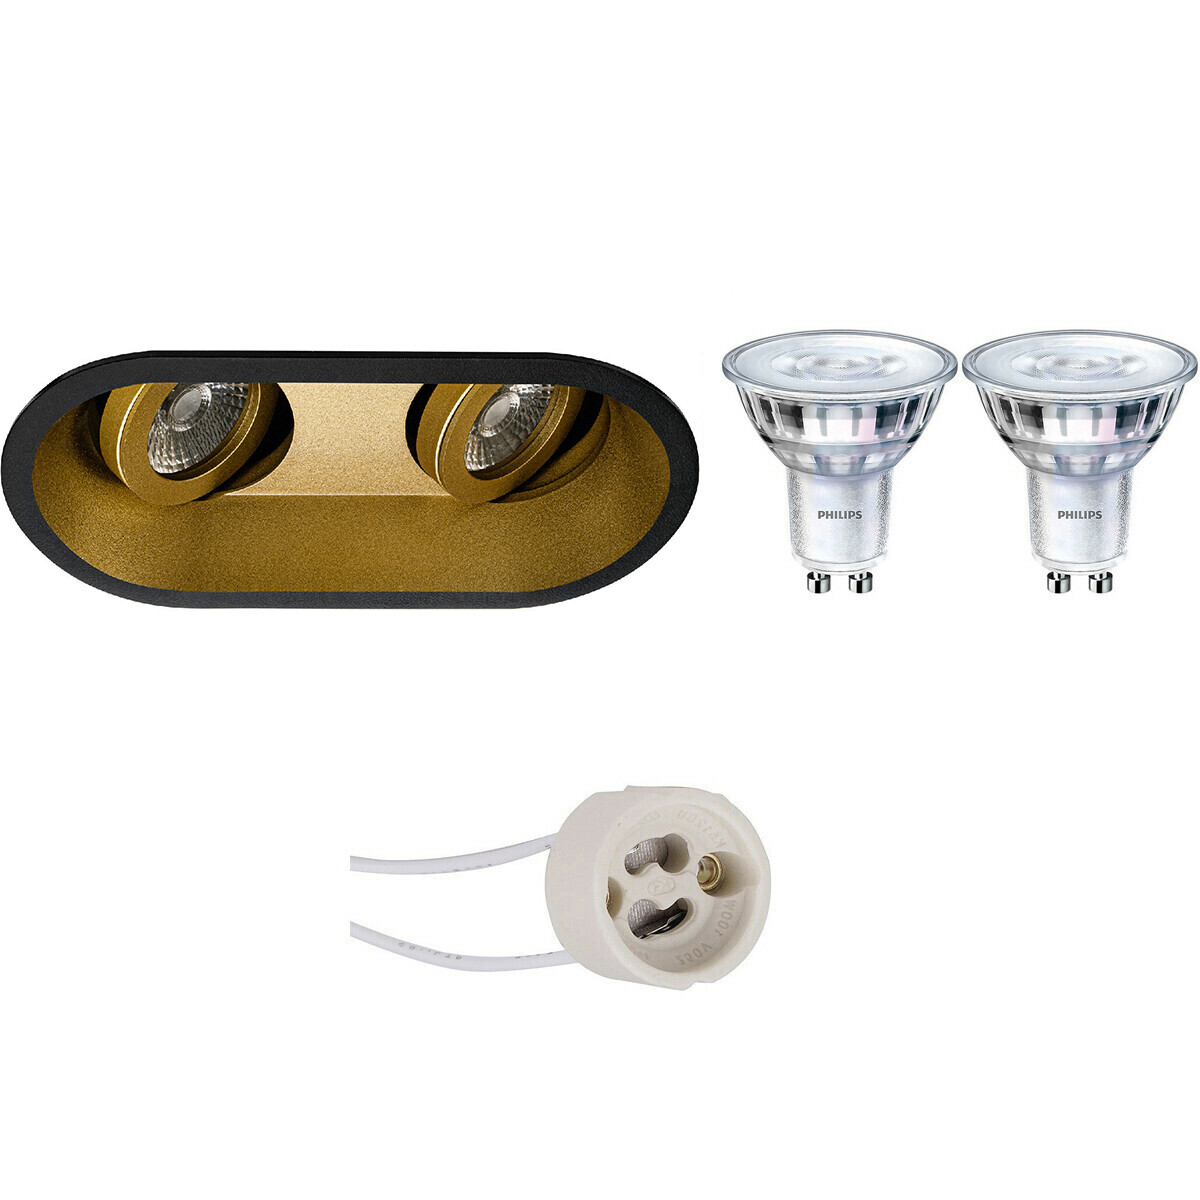 LED Spot Set - Pragmi Zano Pro - GU10 Fitting - Inbouw Ovaal Dubbel - Mat Zwart/Goud - Kantelbaar - 185x93mm - Philips - SceneSwitch 827 36D - 1.5W-5W - Warm Wit 2200K-2700K - Dimb